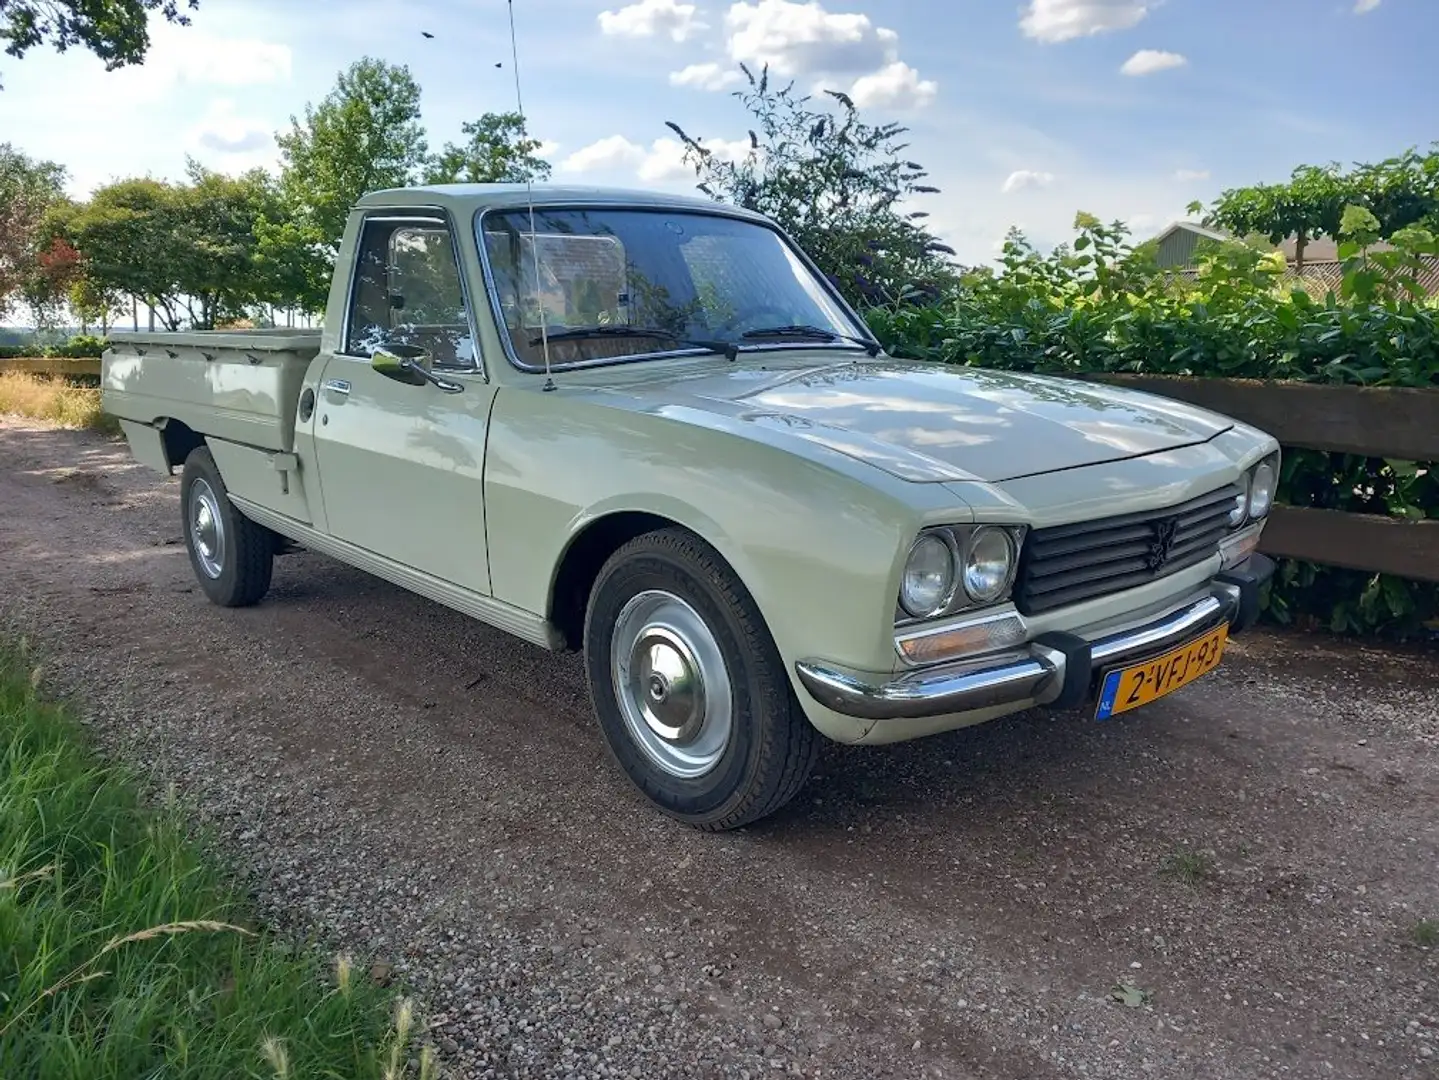 Peugeot 504 1983 diesel pick up - 2